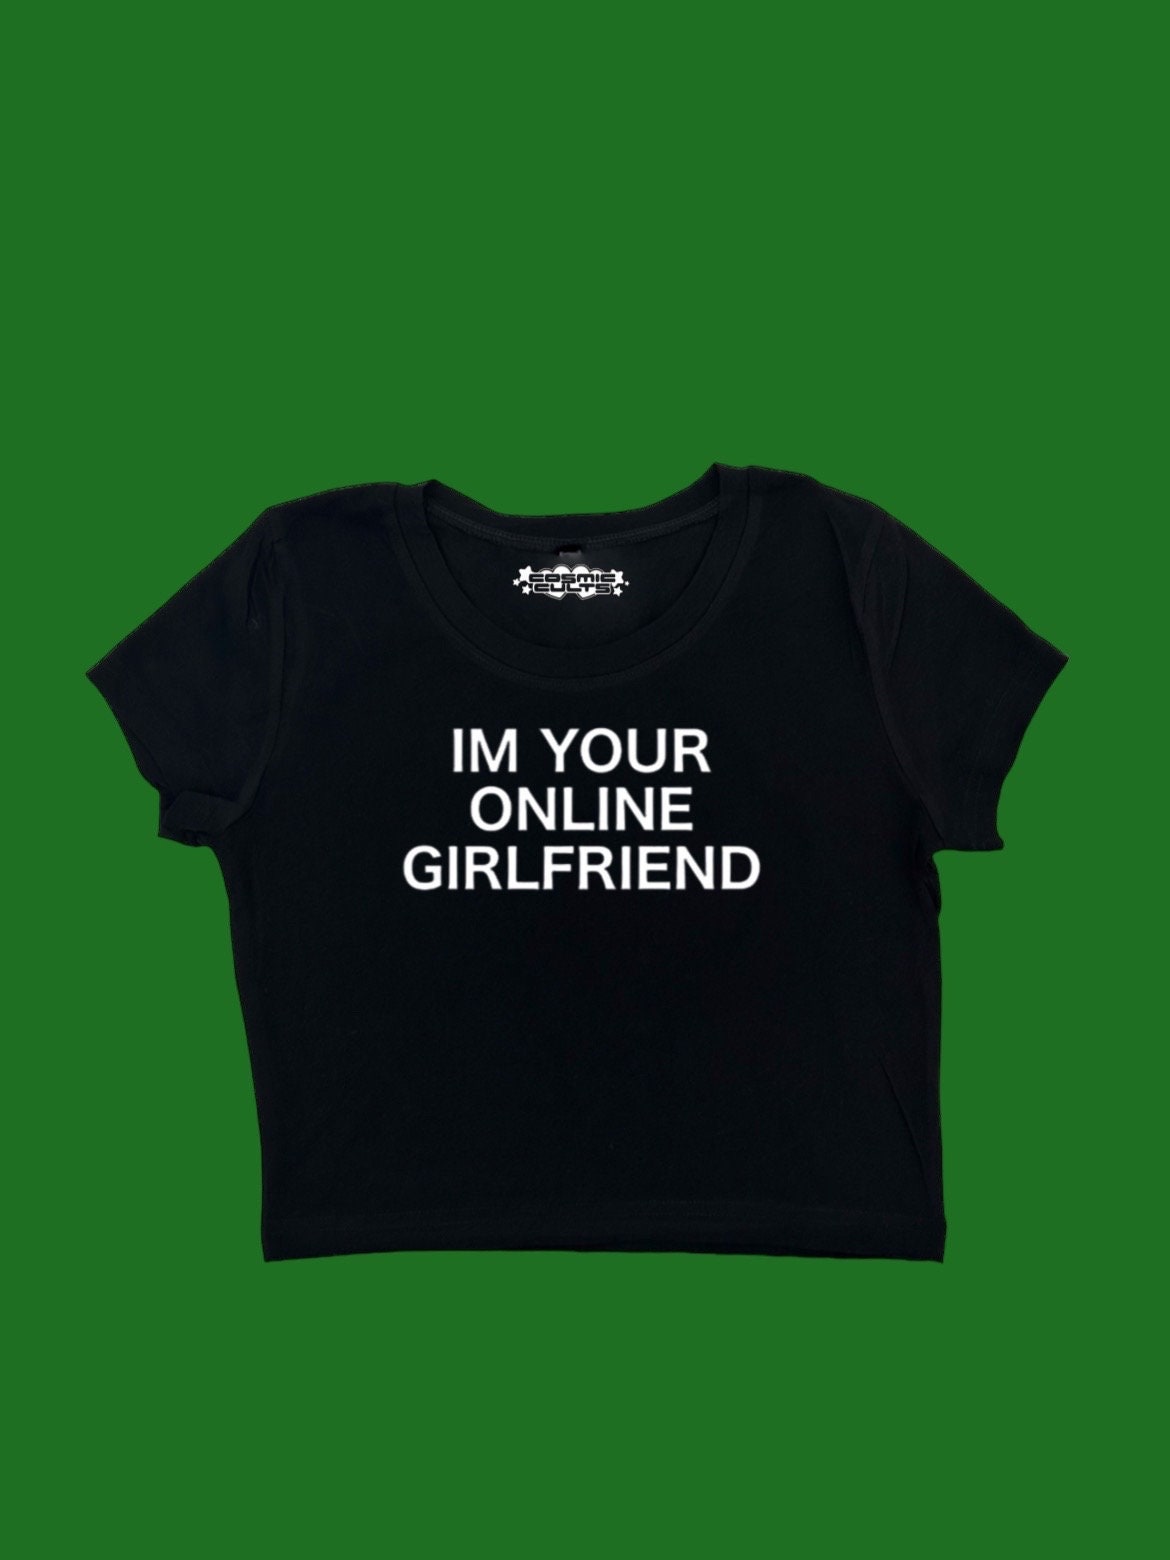 I’m Your Online Girlfriend Y2K crop top baby tee shirt